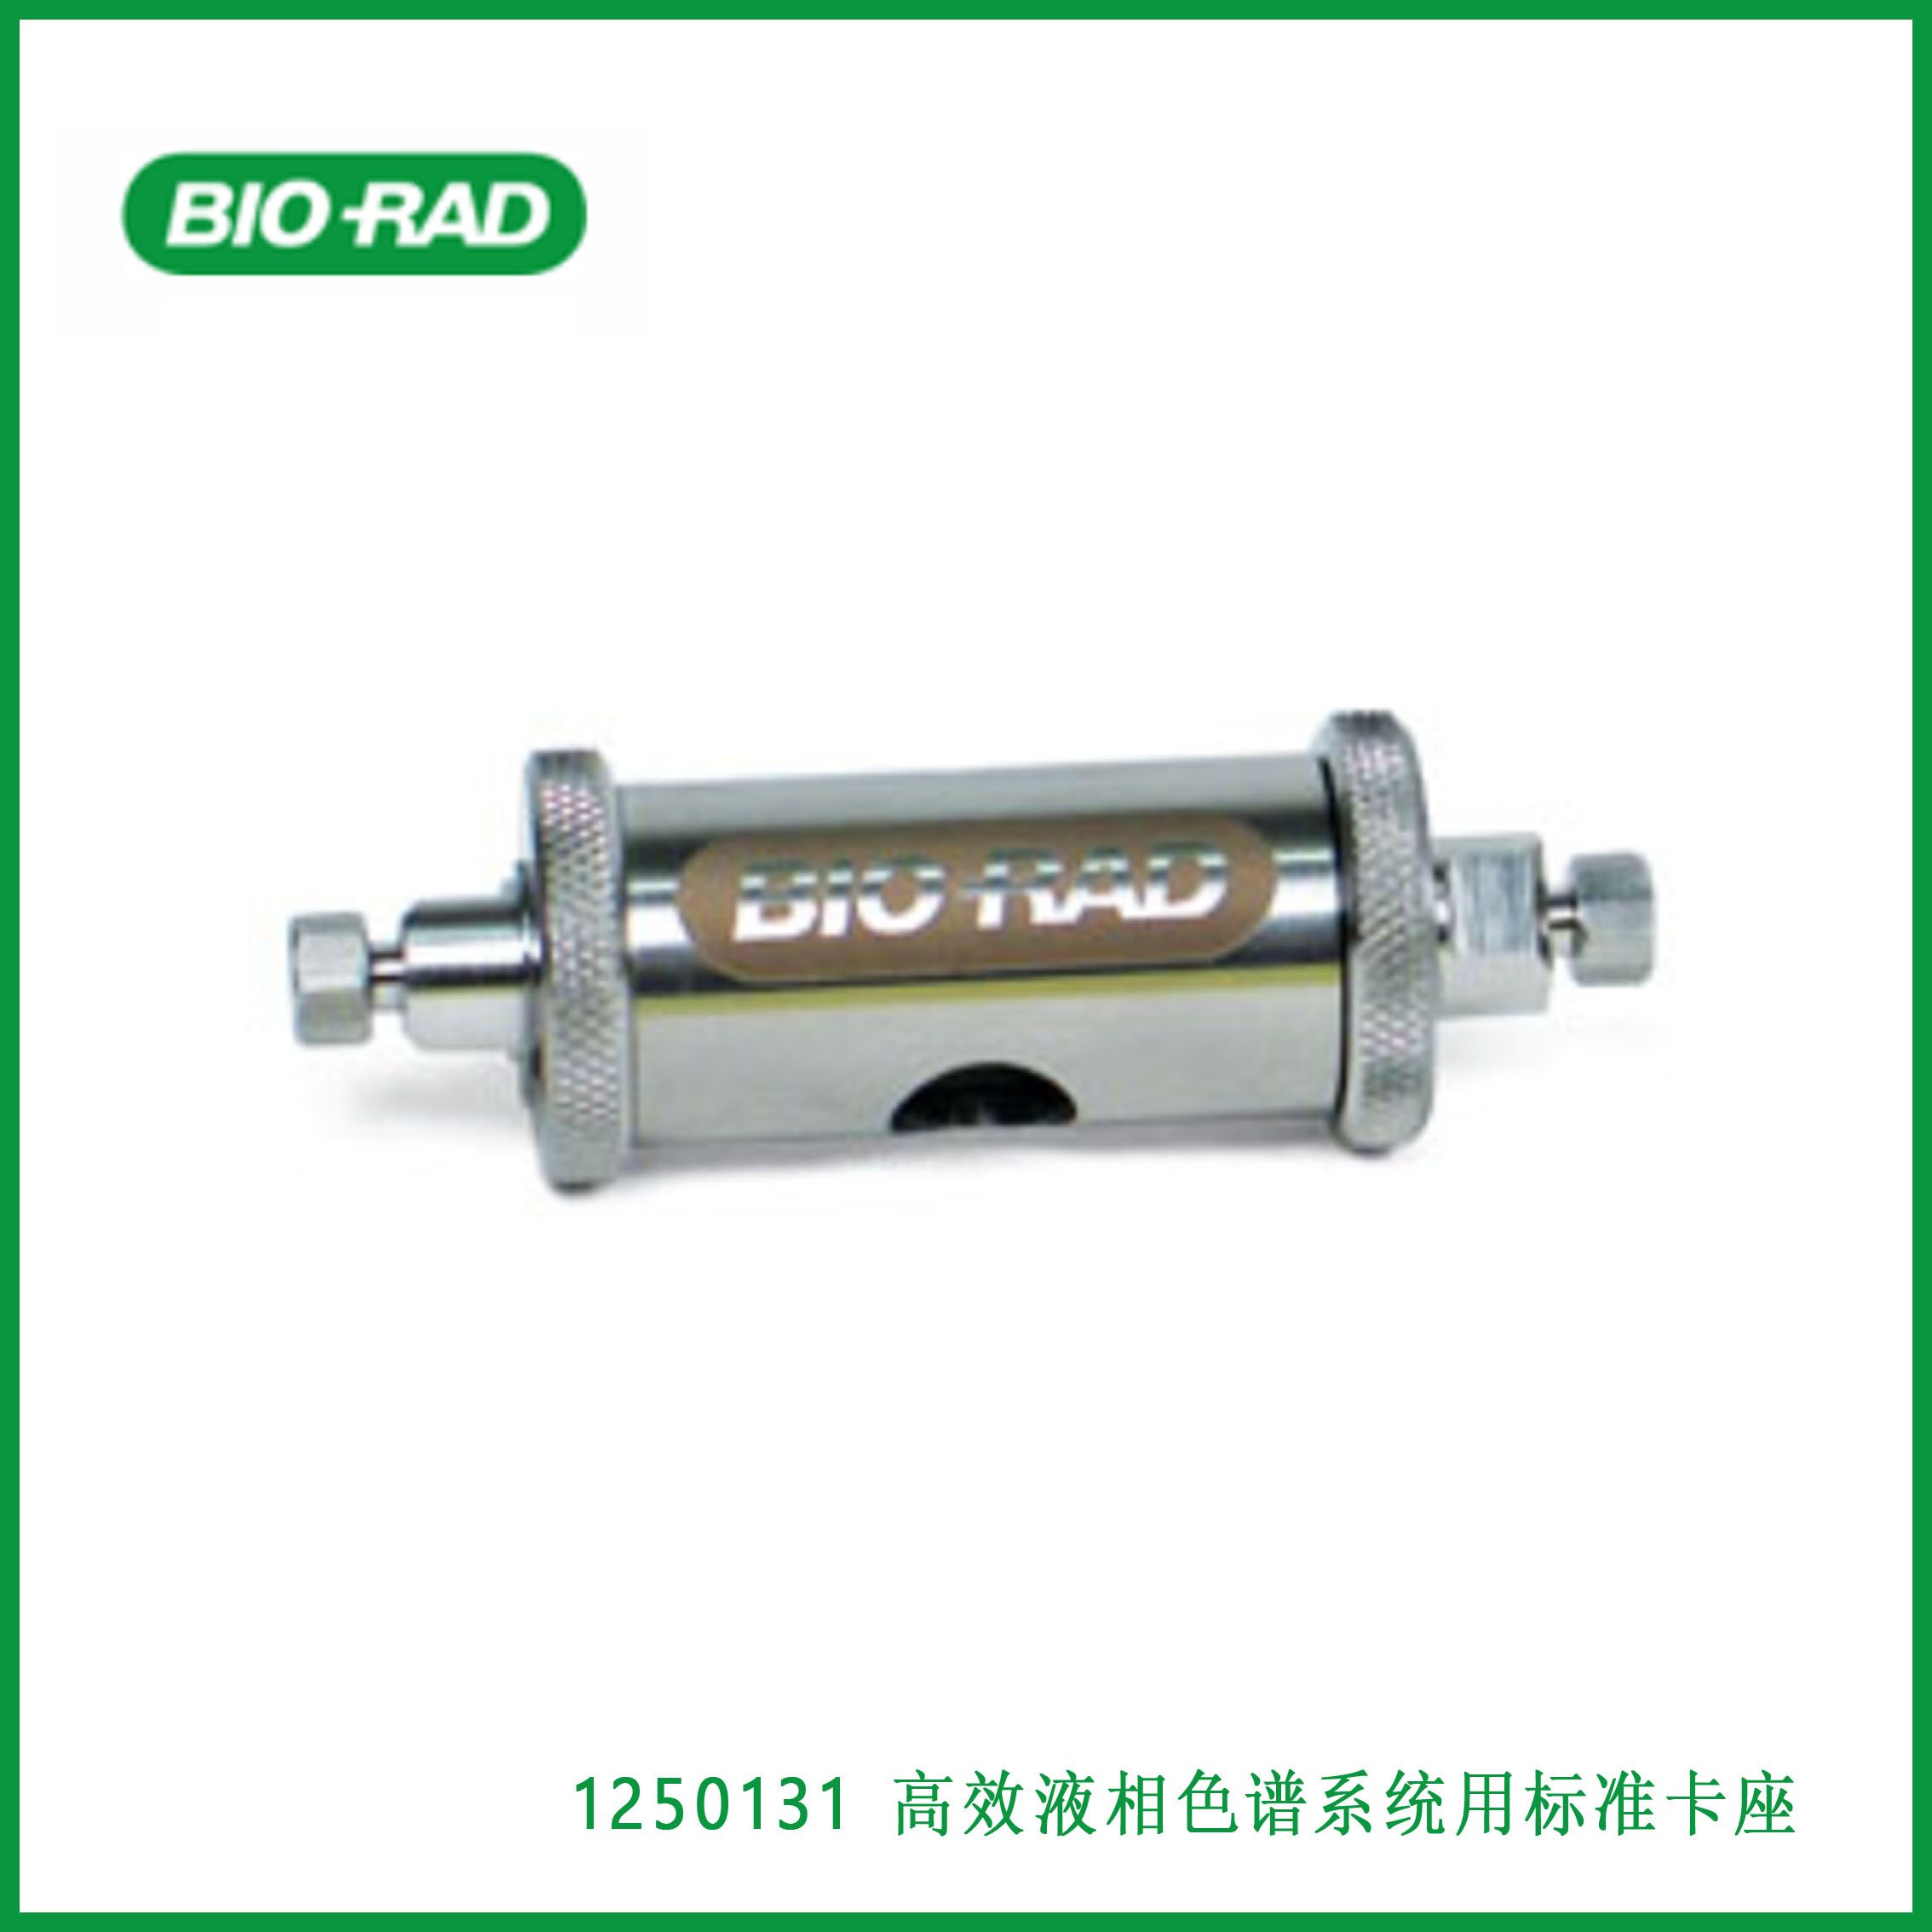 伯乐Bio-Rad1250131 Standard Cartridge Holder for HPLC Systems，高效液相色谱系统用标准卡座,现货